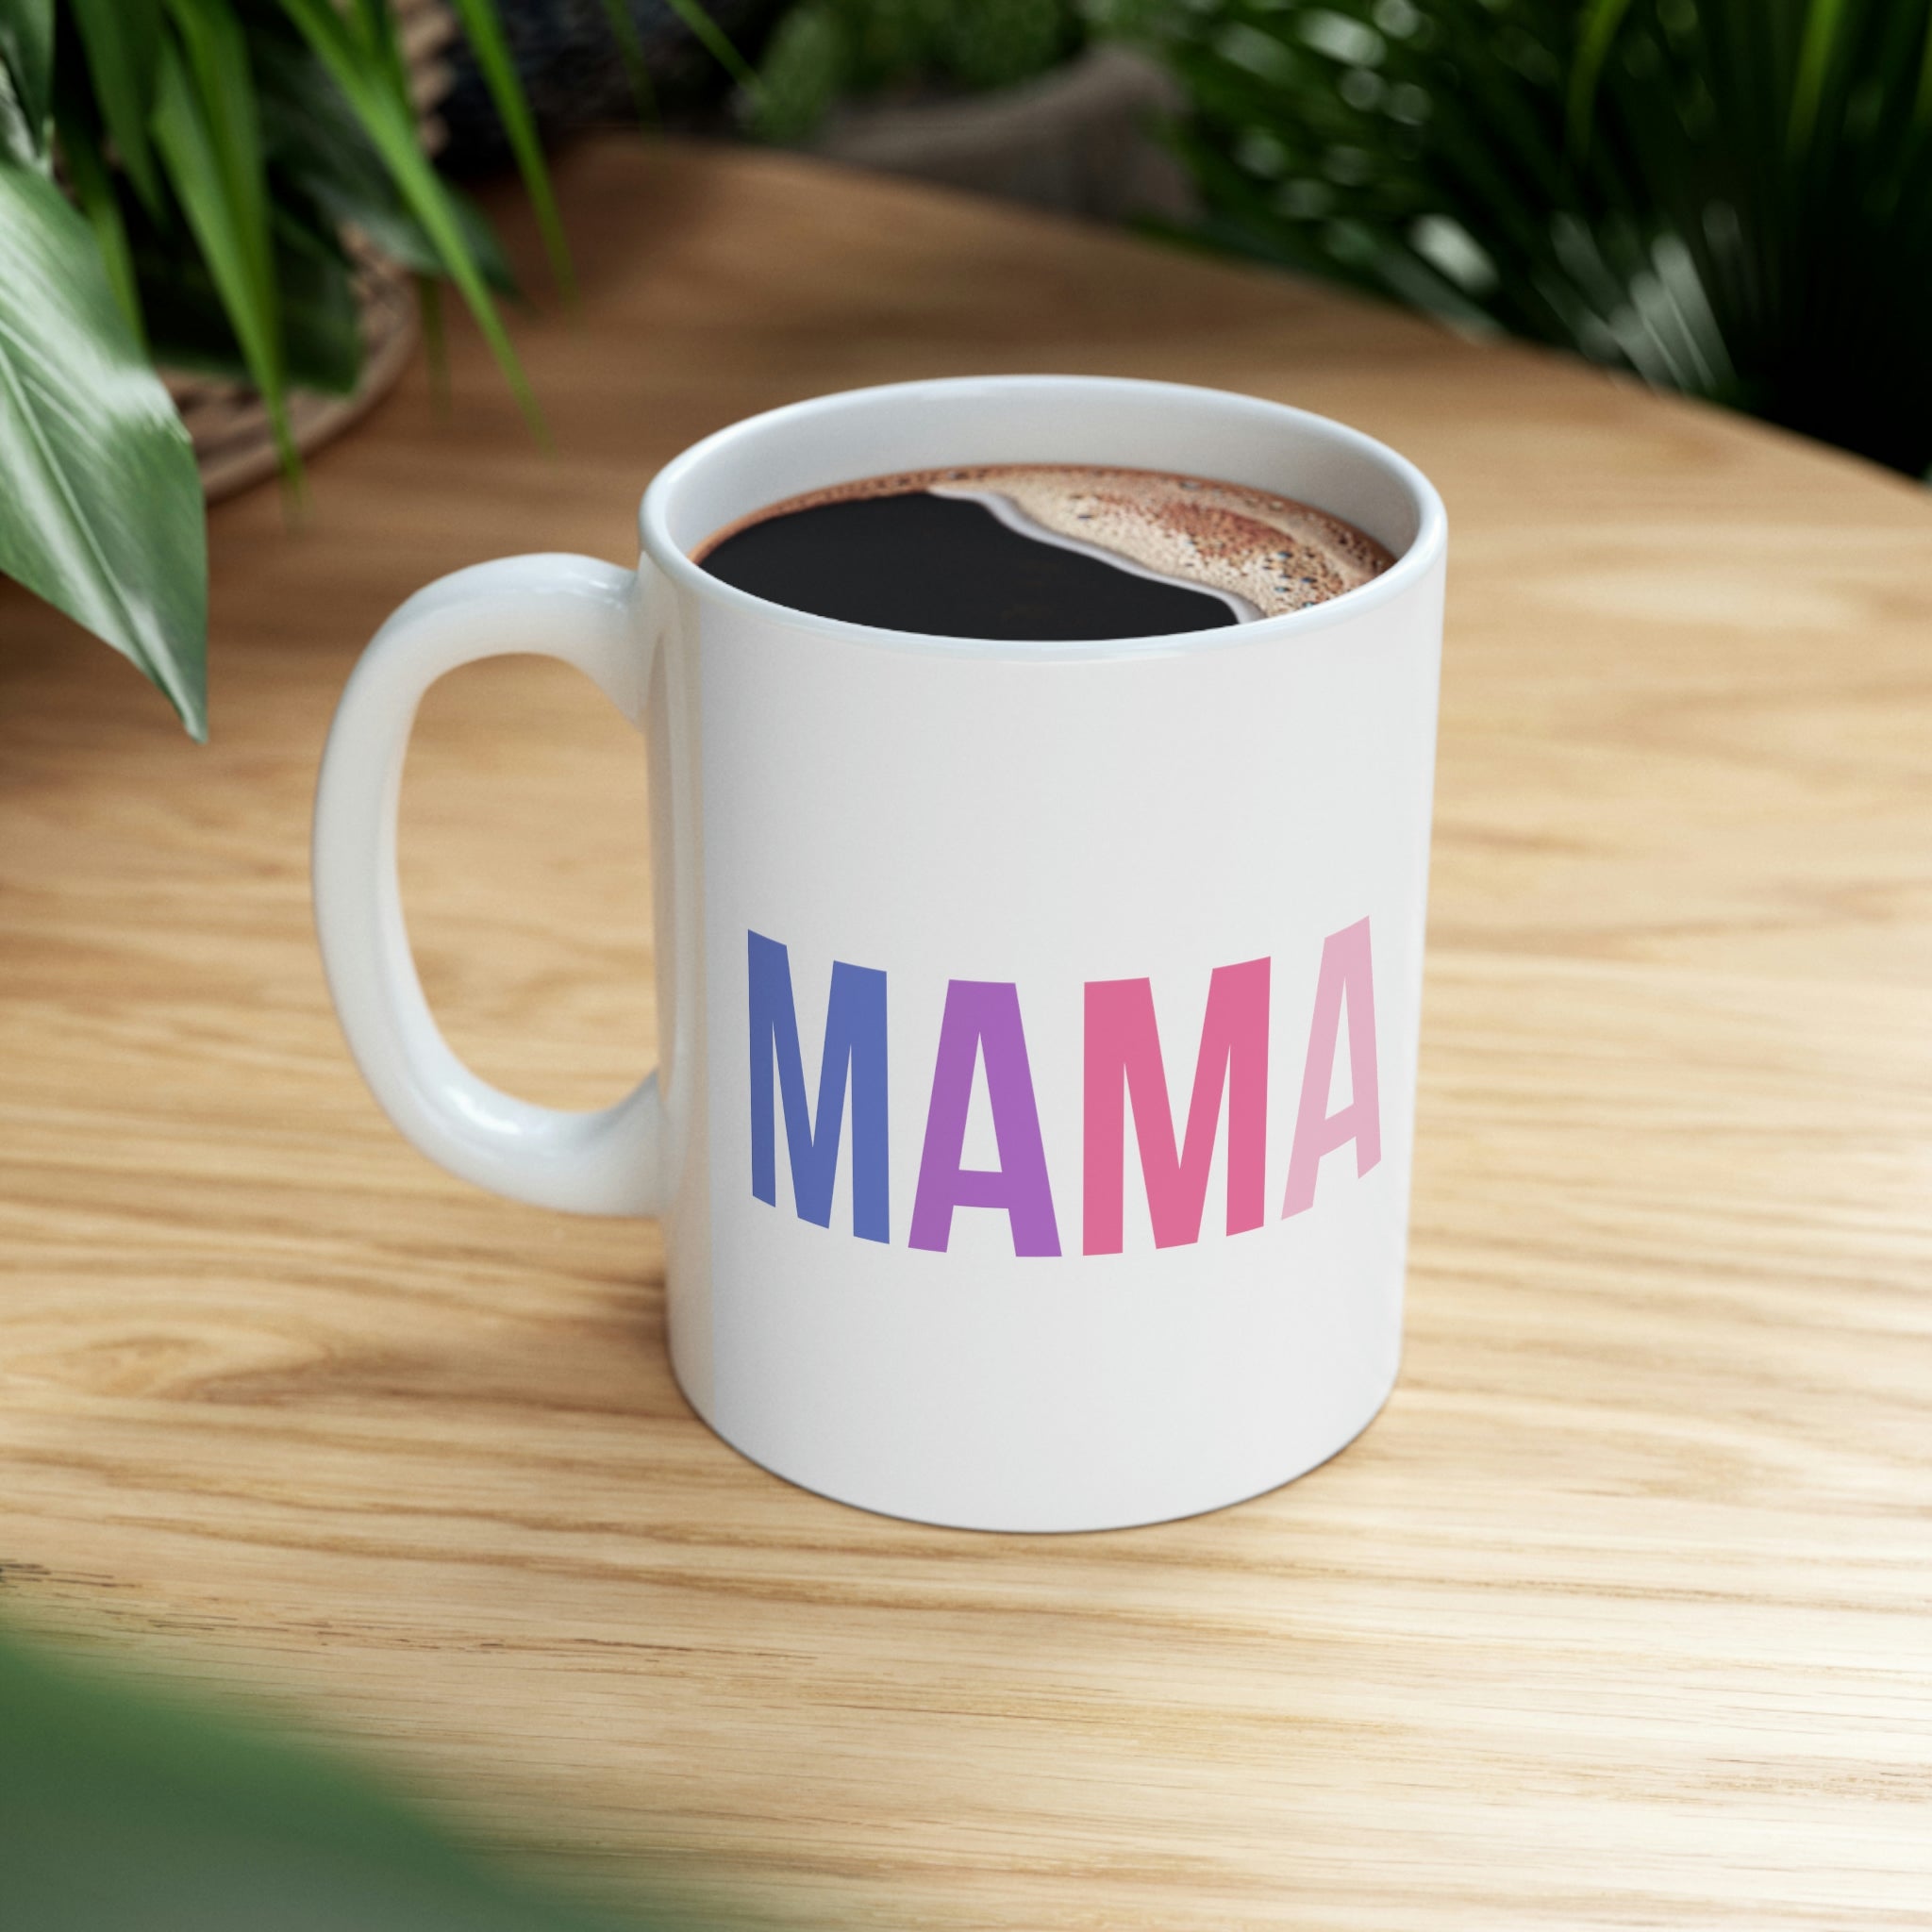 Mama Colorful Design Ceramic Mug 11oz